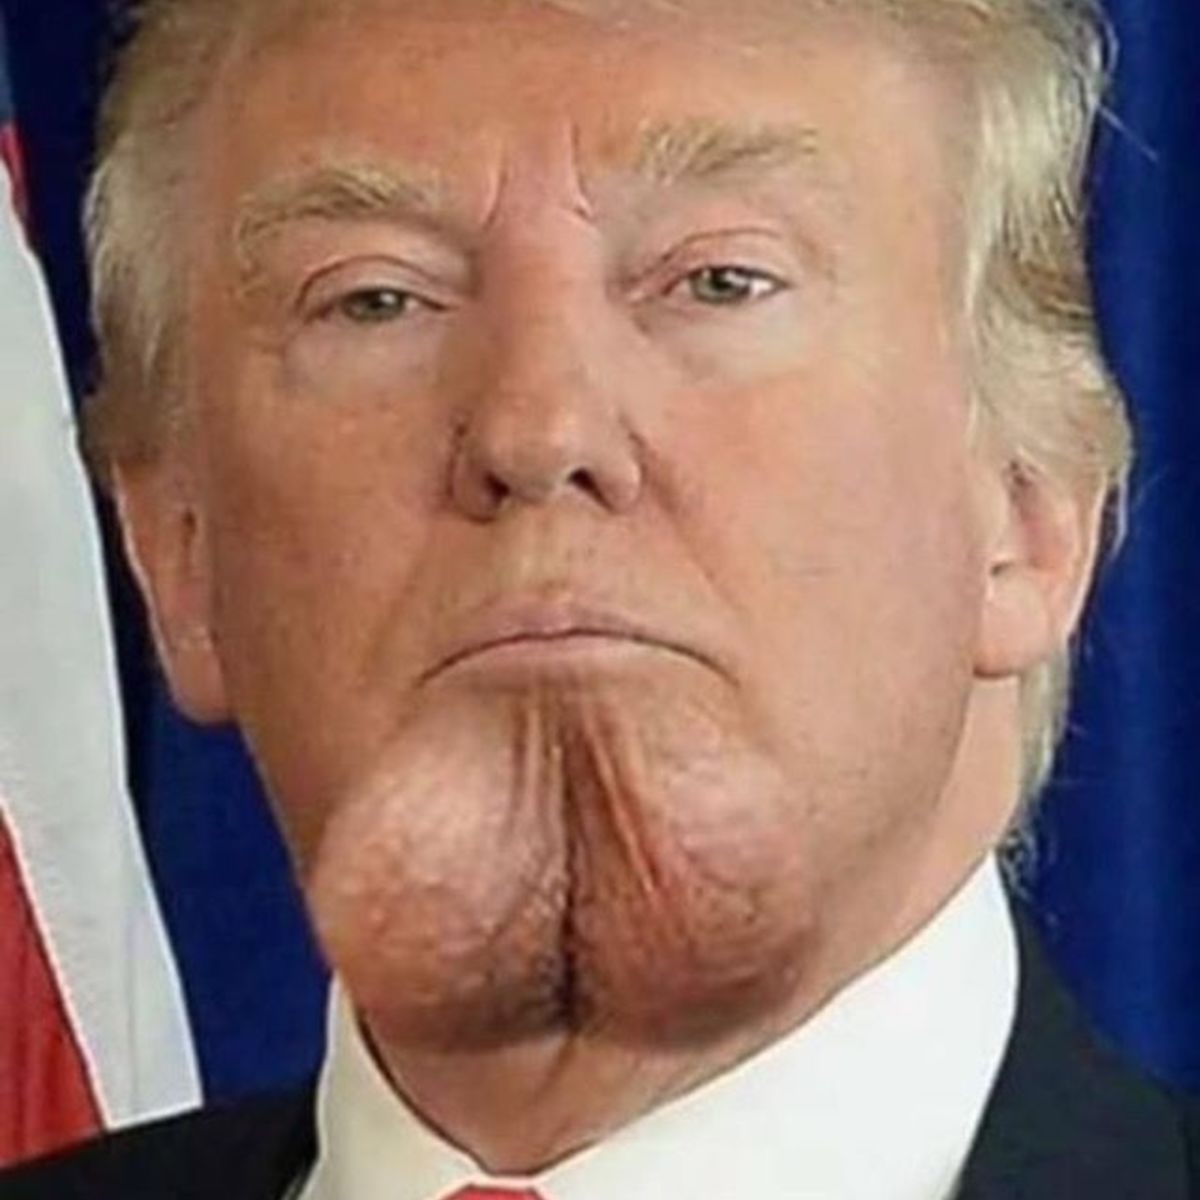 Trump has a tiny mushroom dick